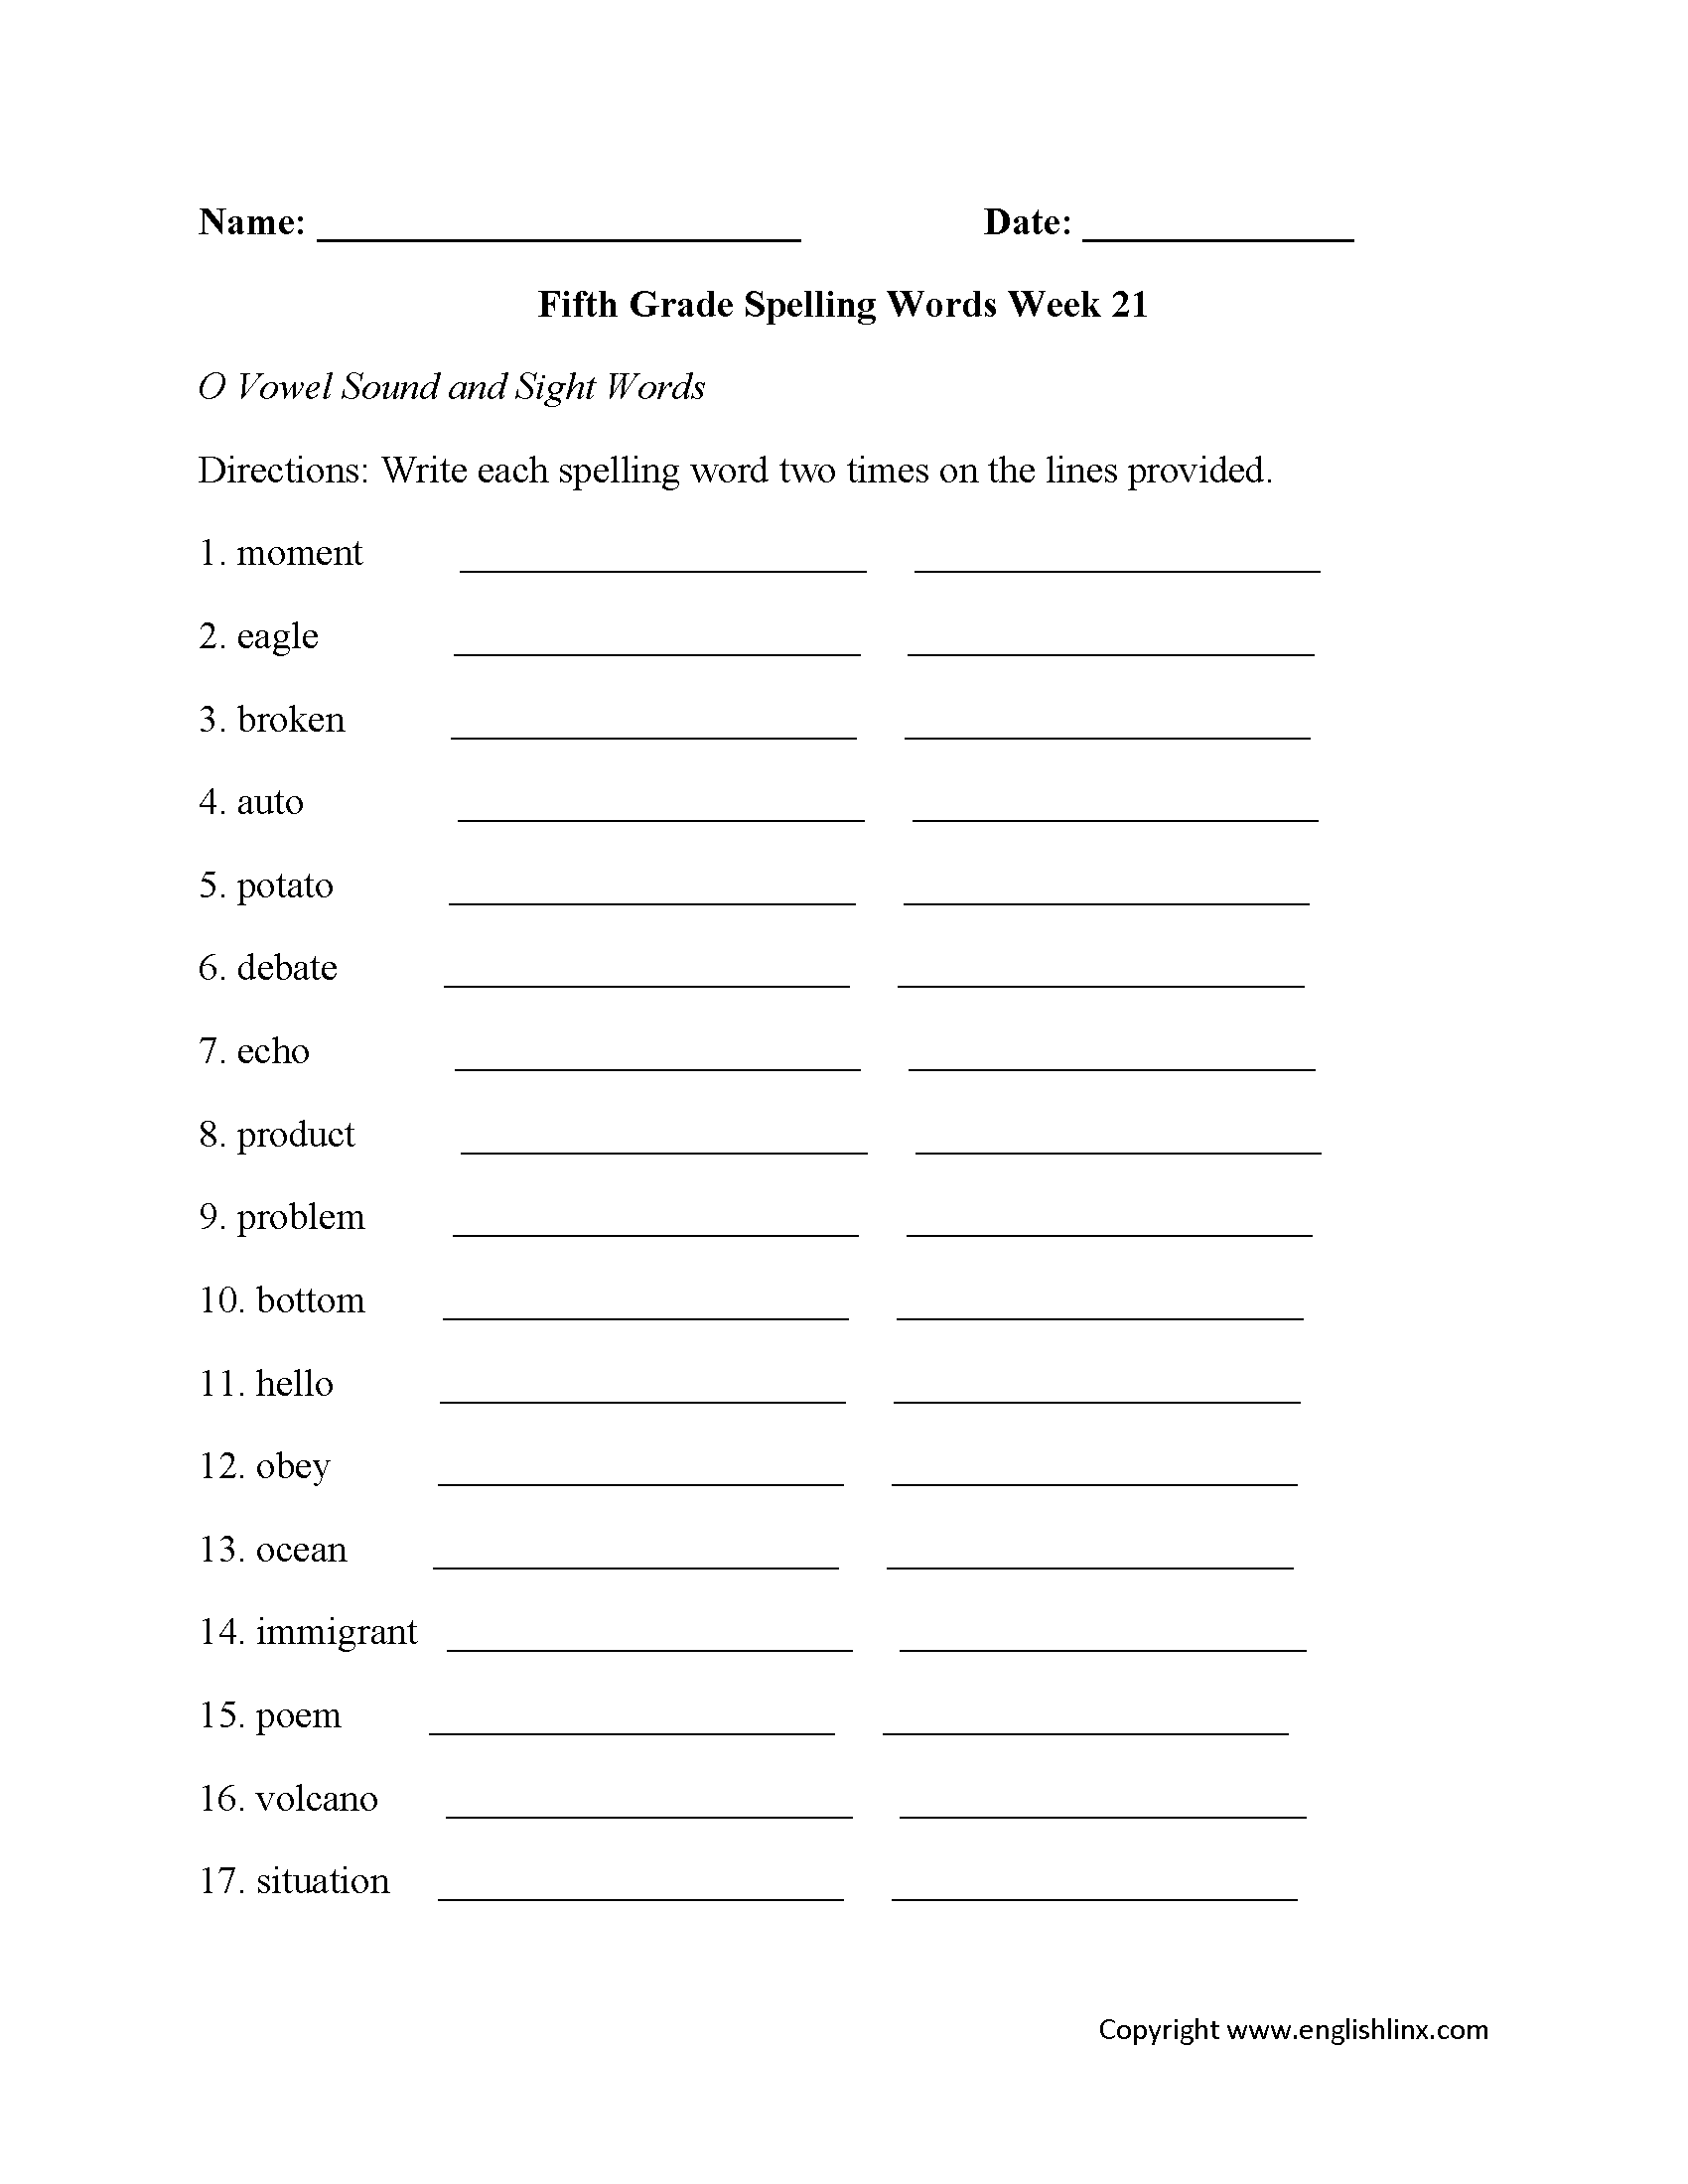 Week 21 O Vowel Fifth Grade Spelling Worksheets